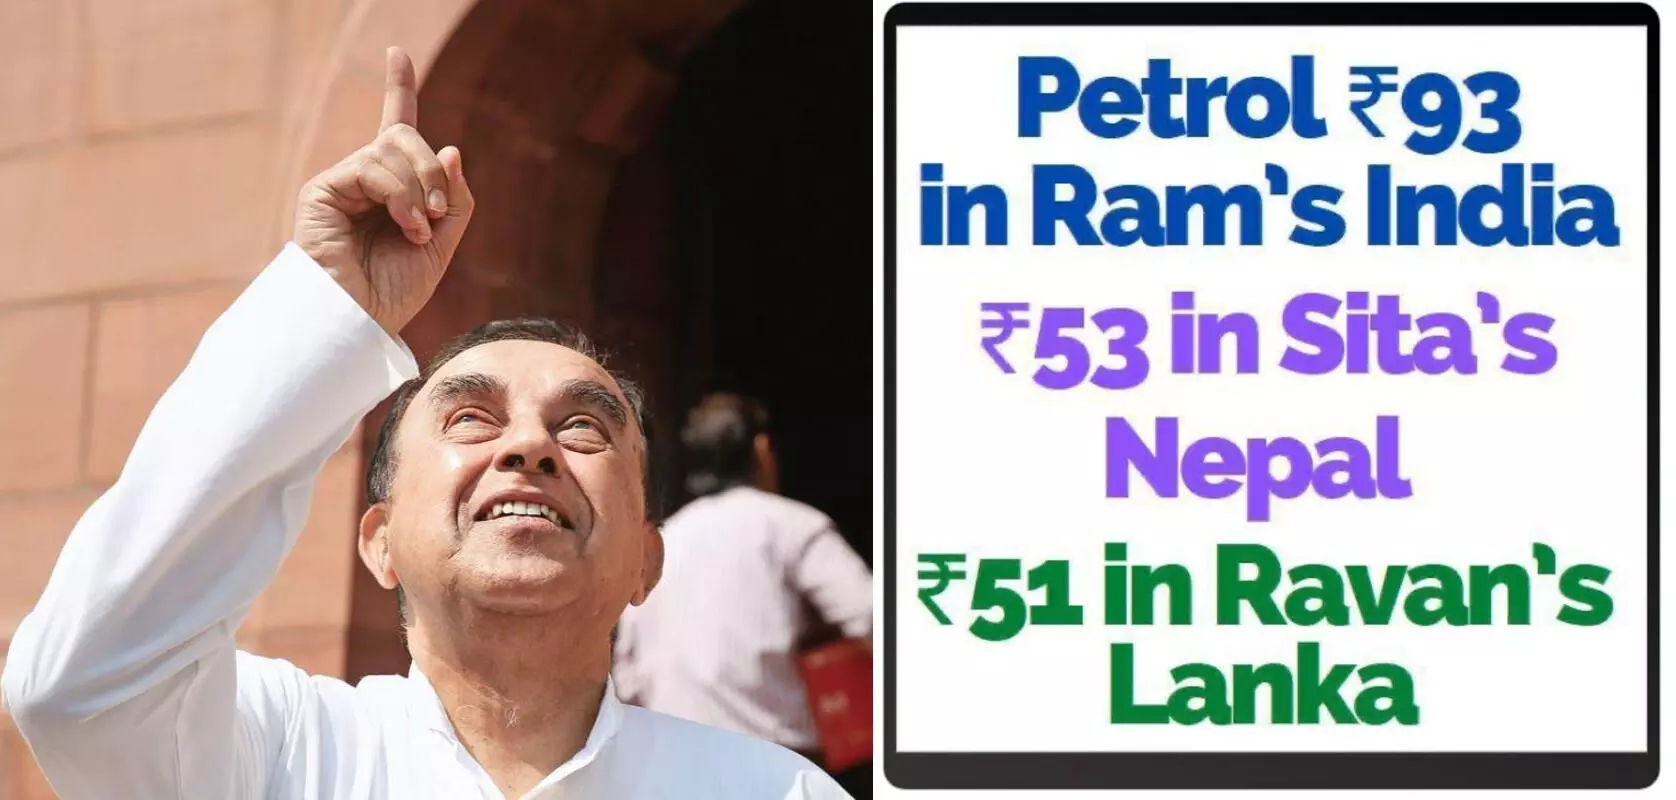 BJP MP का मोदी सरकार पर हमला, लिखा- रावण की लंका में पेट्रोल 51, सीता के नेपाल में 53 रुपये और राम के भारत में 93 है